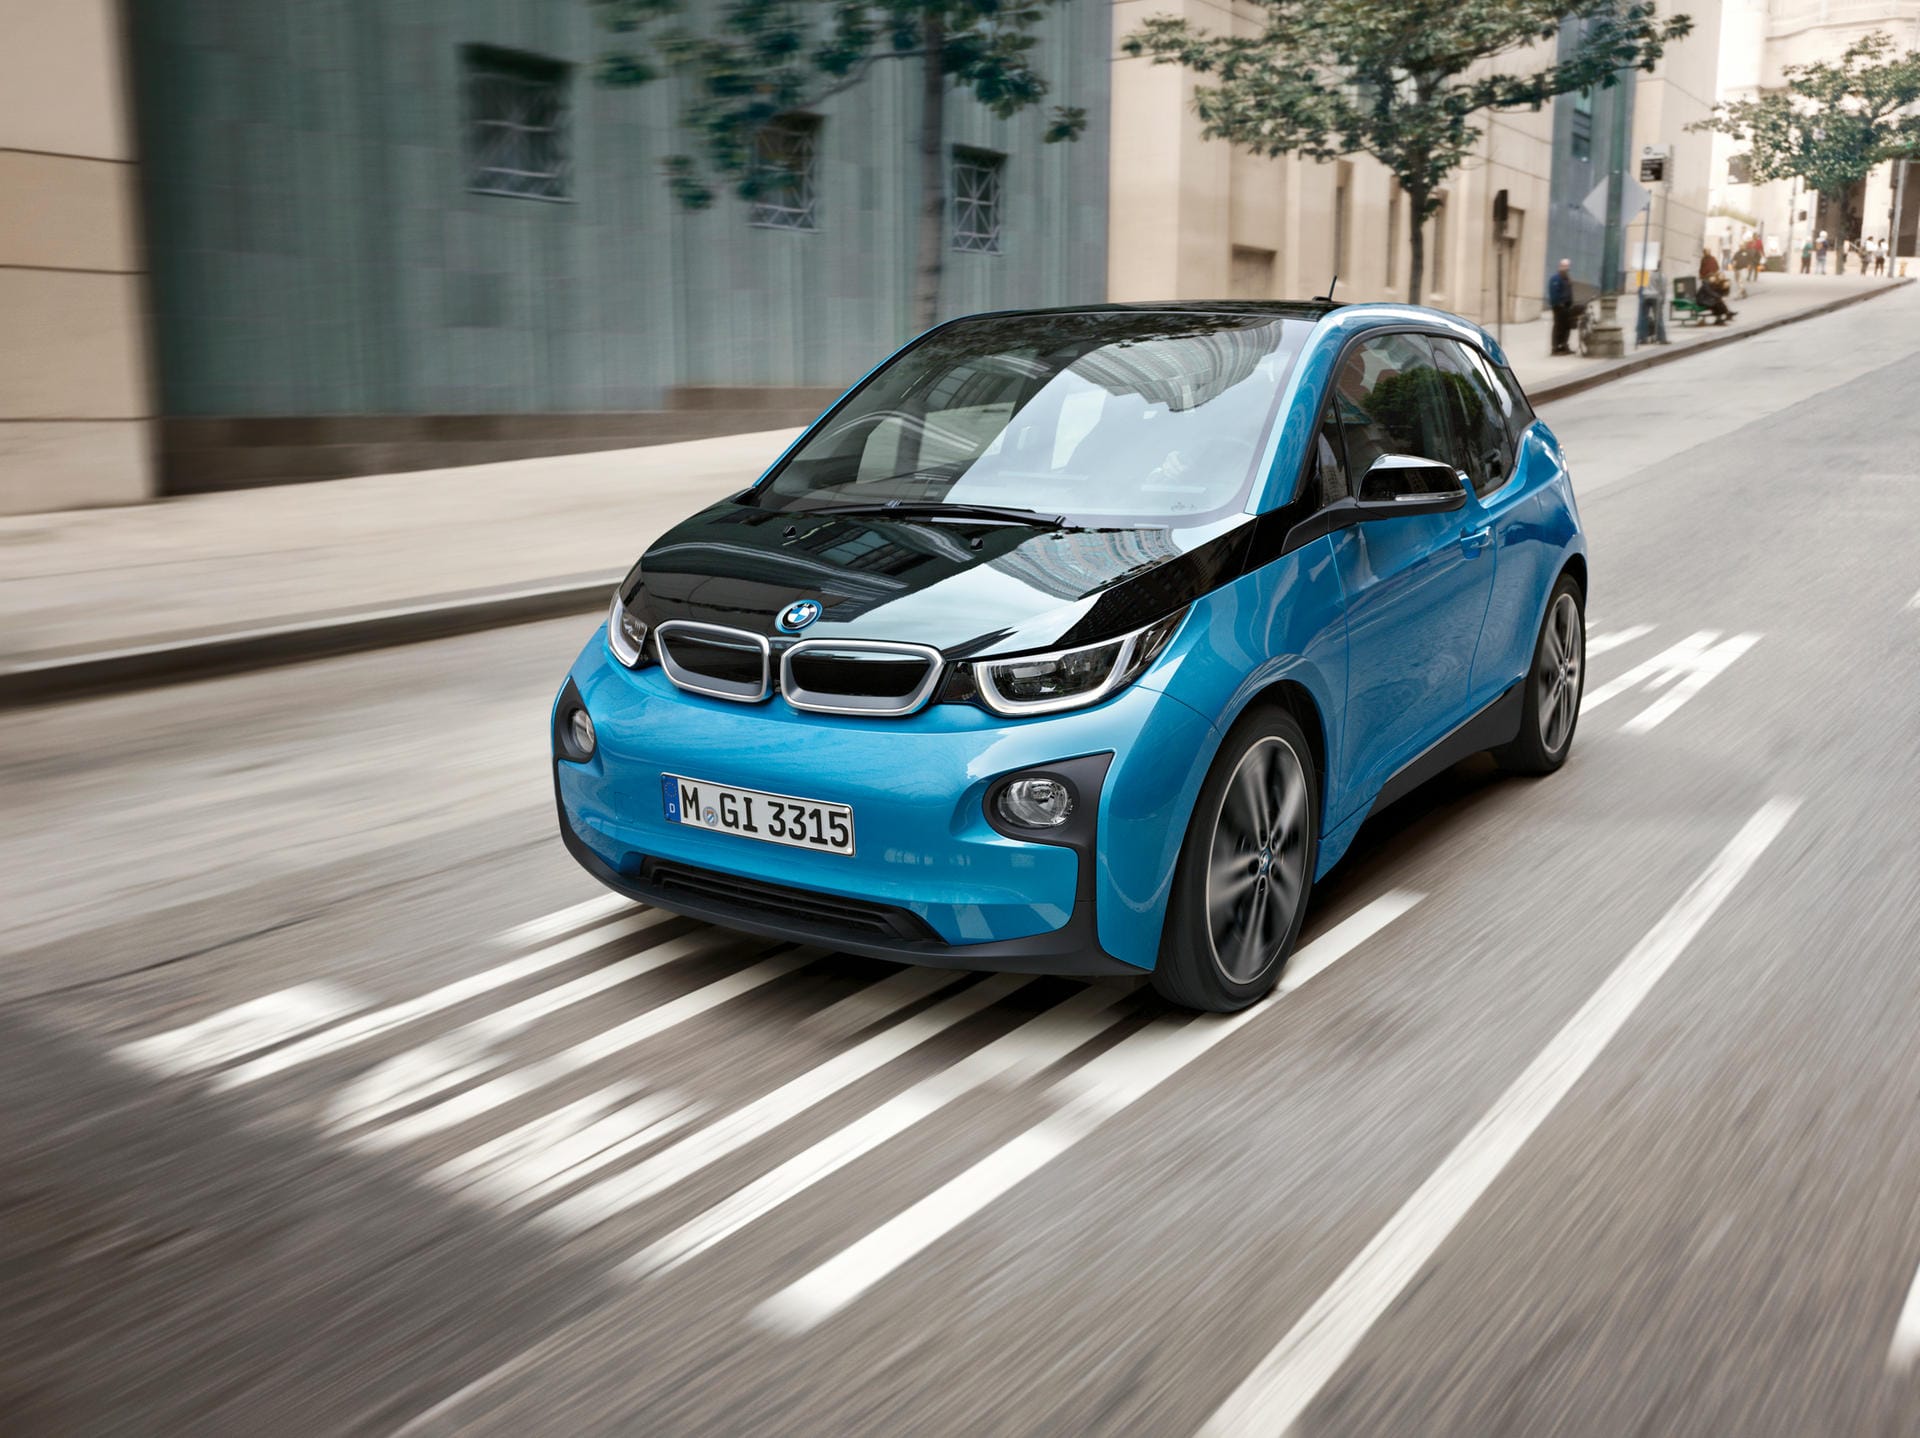 BMWs Elektroauto i3 besteht zu rund 95 Prozent aus CFK. Nur eine tragende Stütze ist aus Aluminium, alles andere besteht aus Carbon.